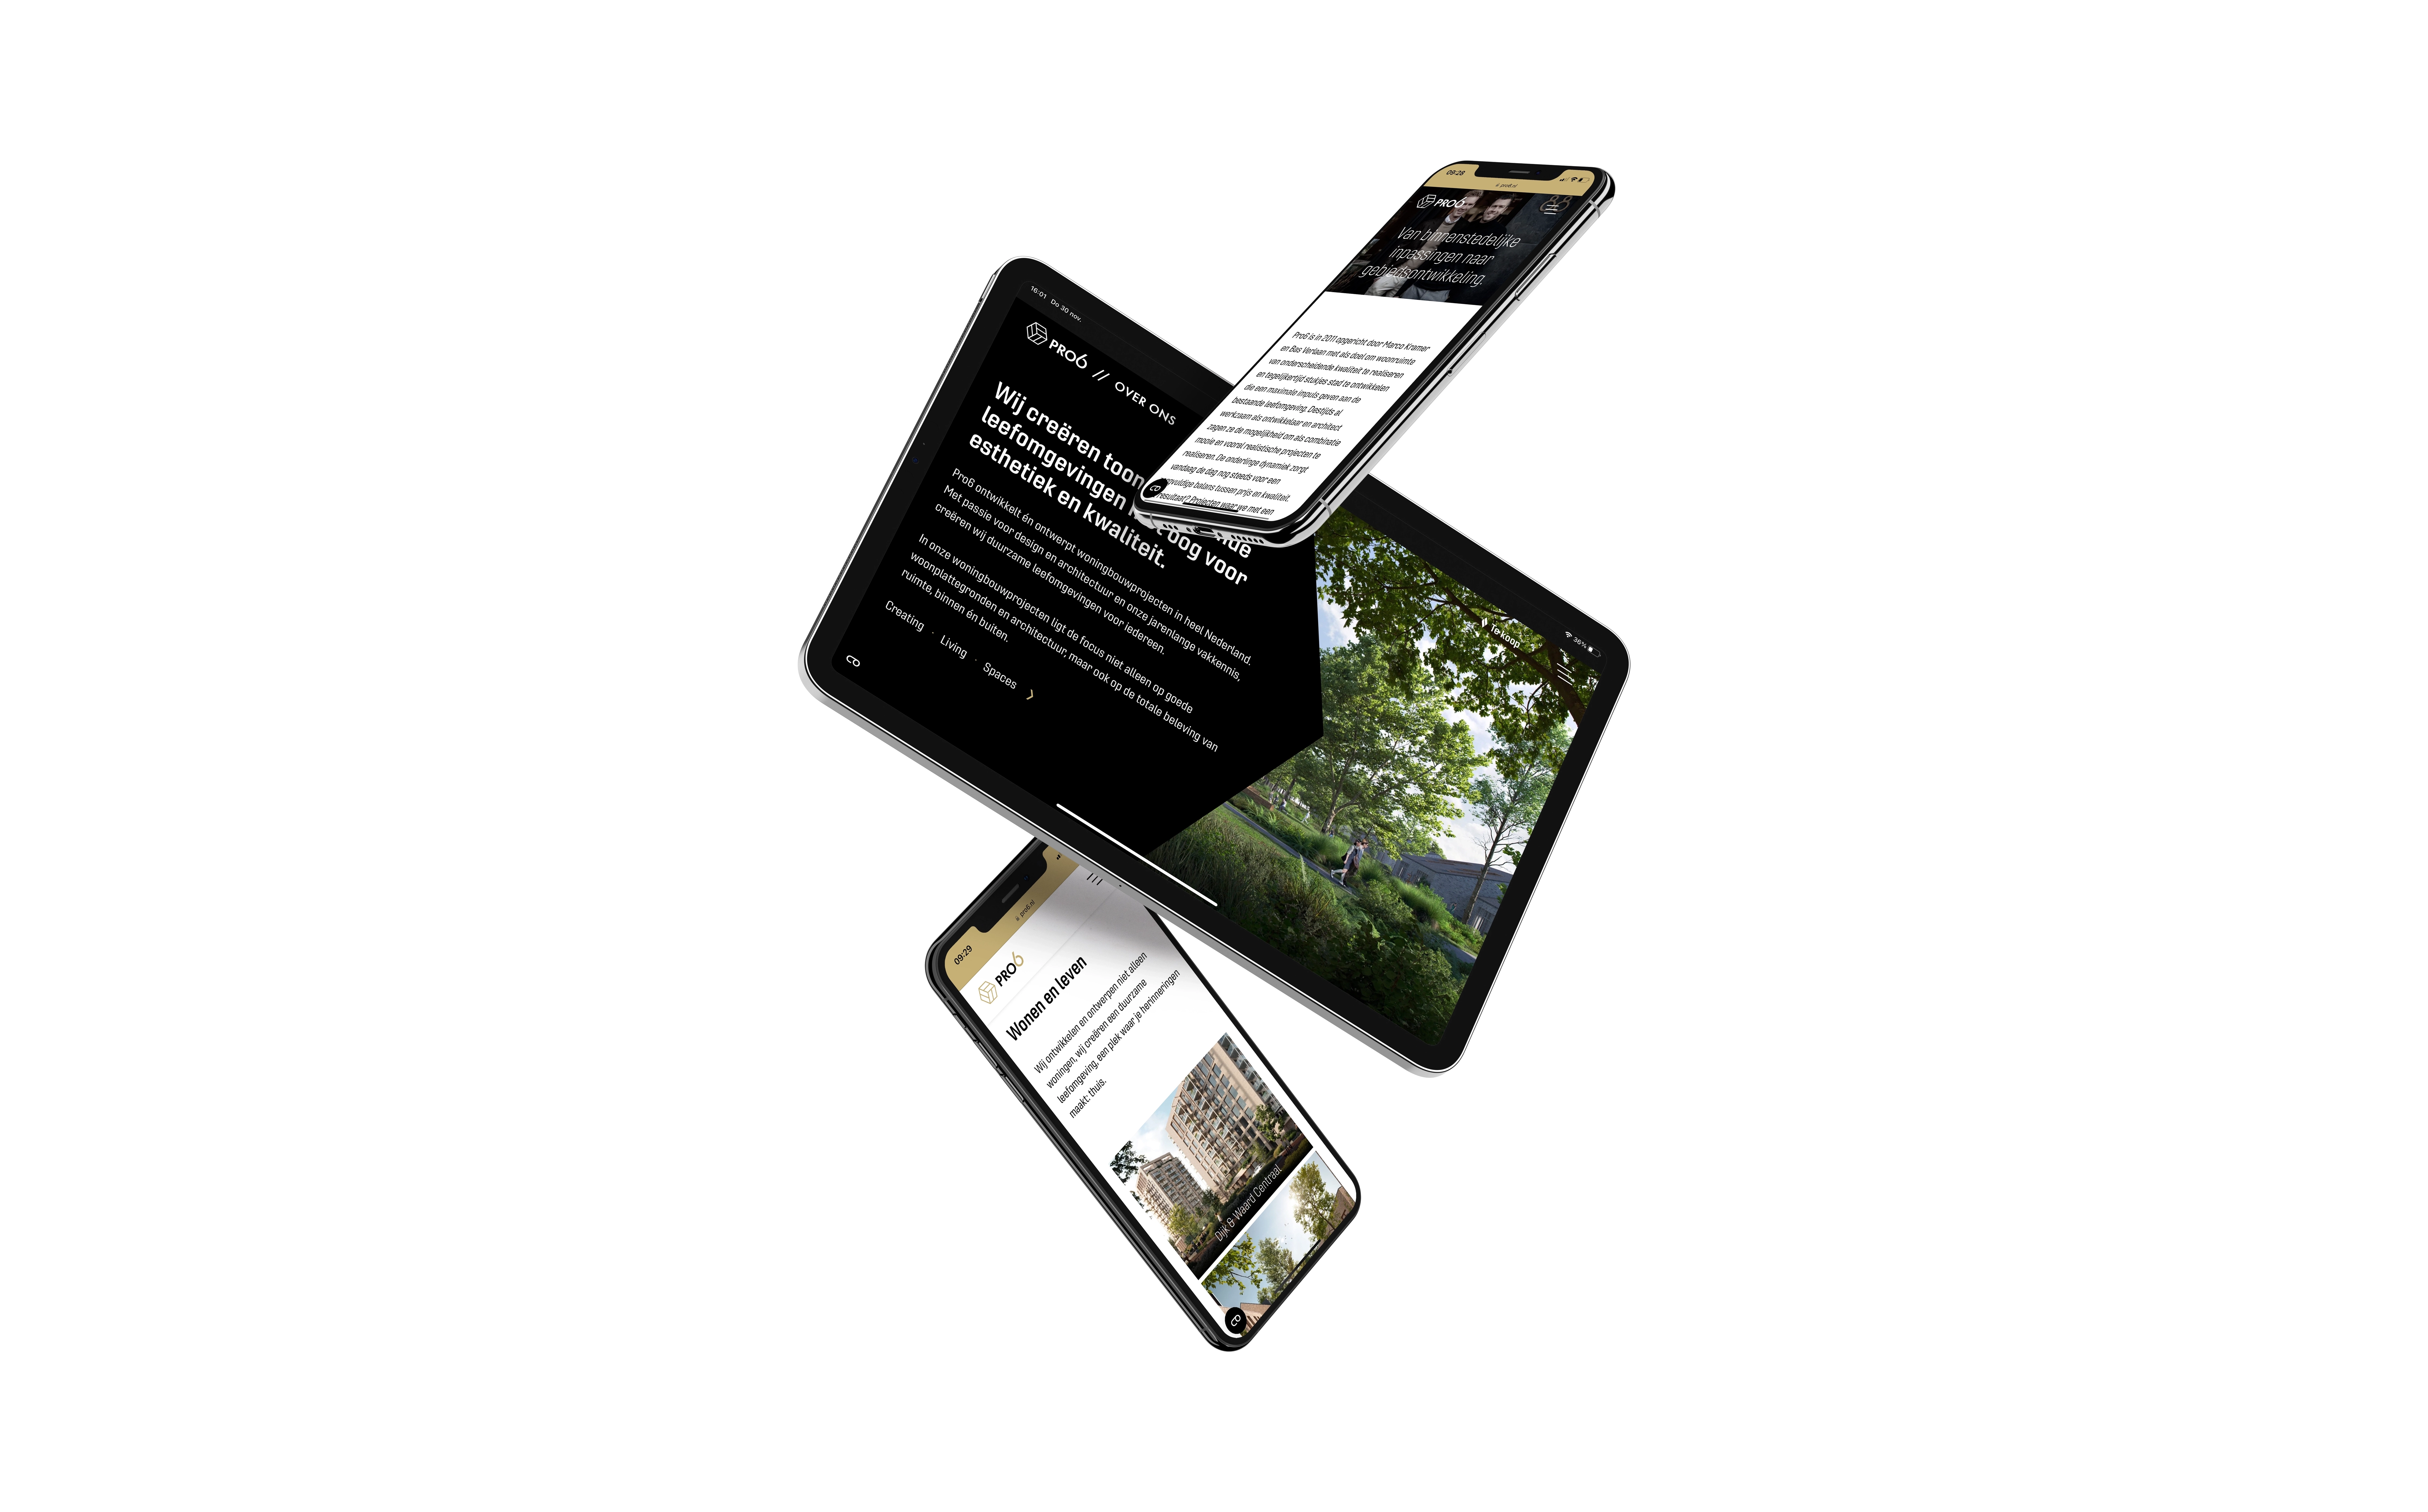 Mockup van een tablet en mobiel waar de pro6 website getoond wordt.